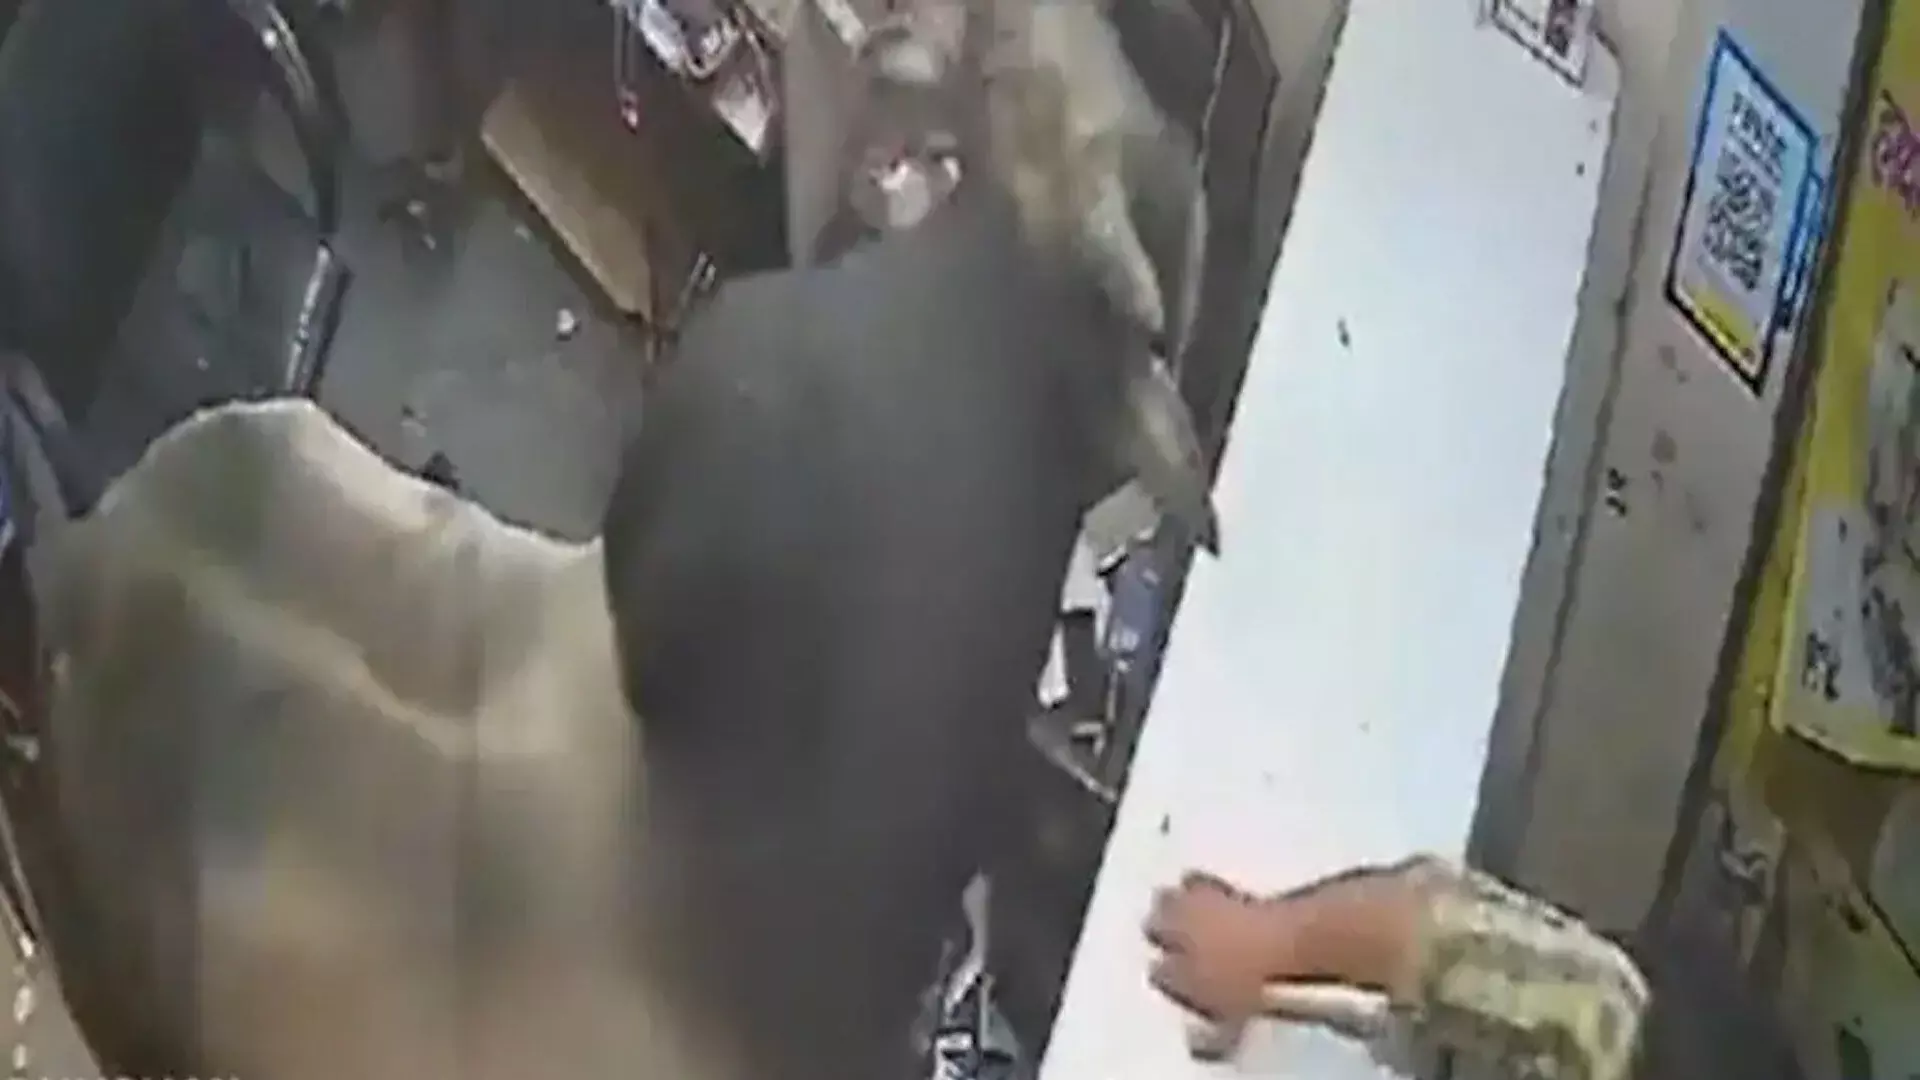 एक मोबाइल दुकान में बैल, वीडियो में दो श्रमिकों के साथ एक जानवर को छोटे स्टोर में घुसते हुए दिखाया गया